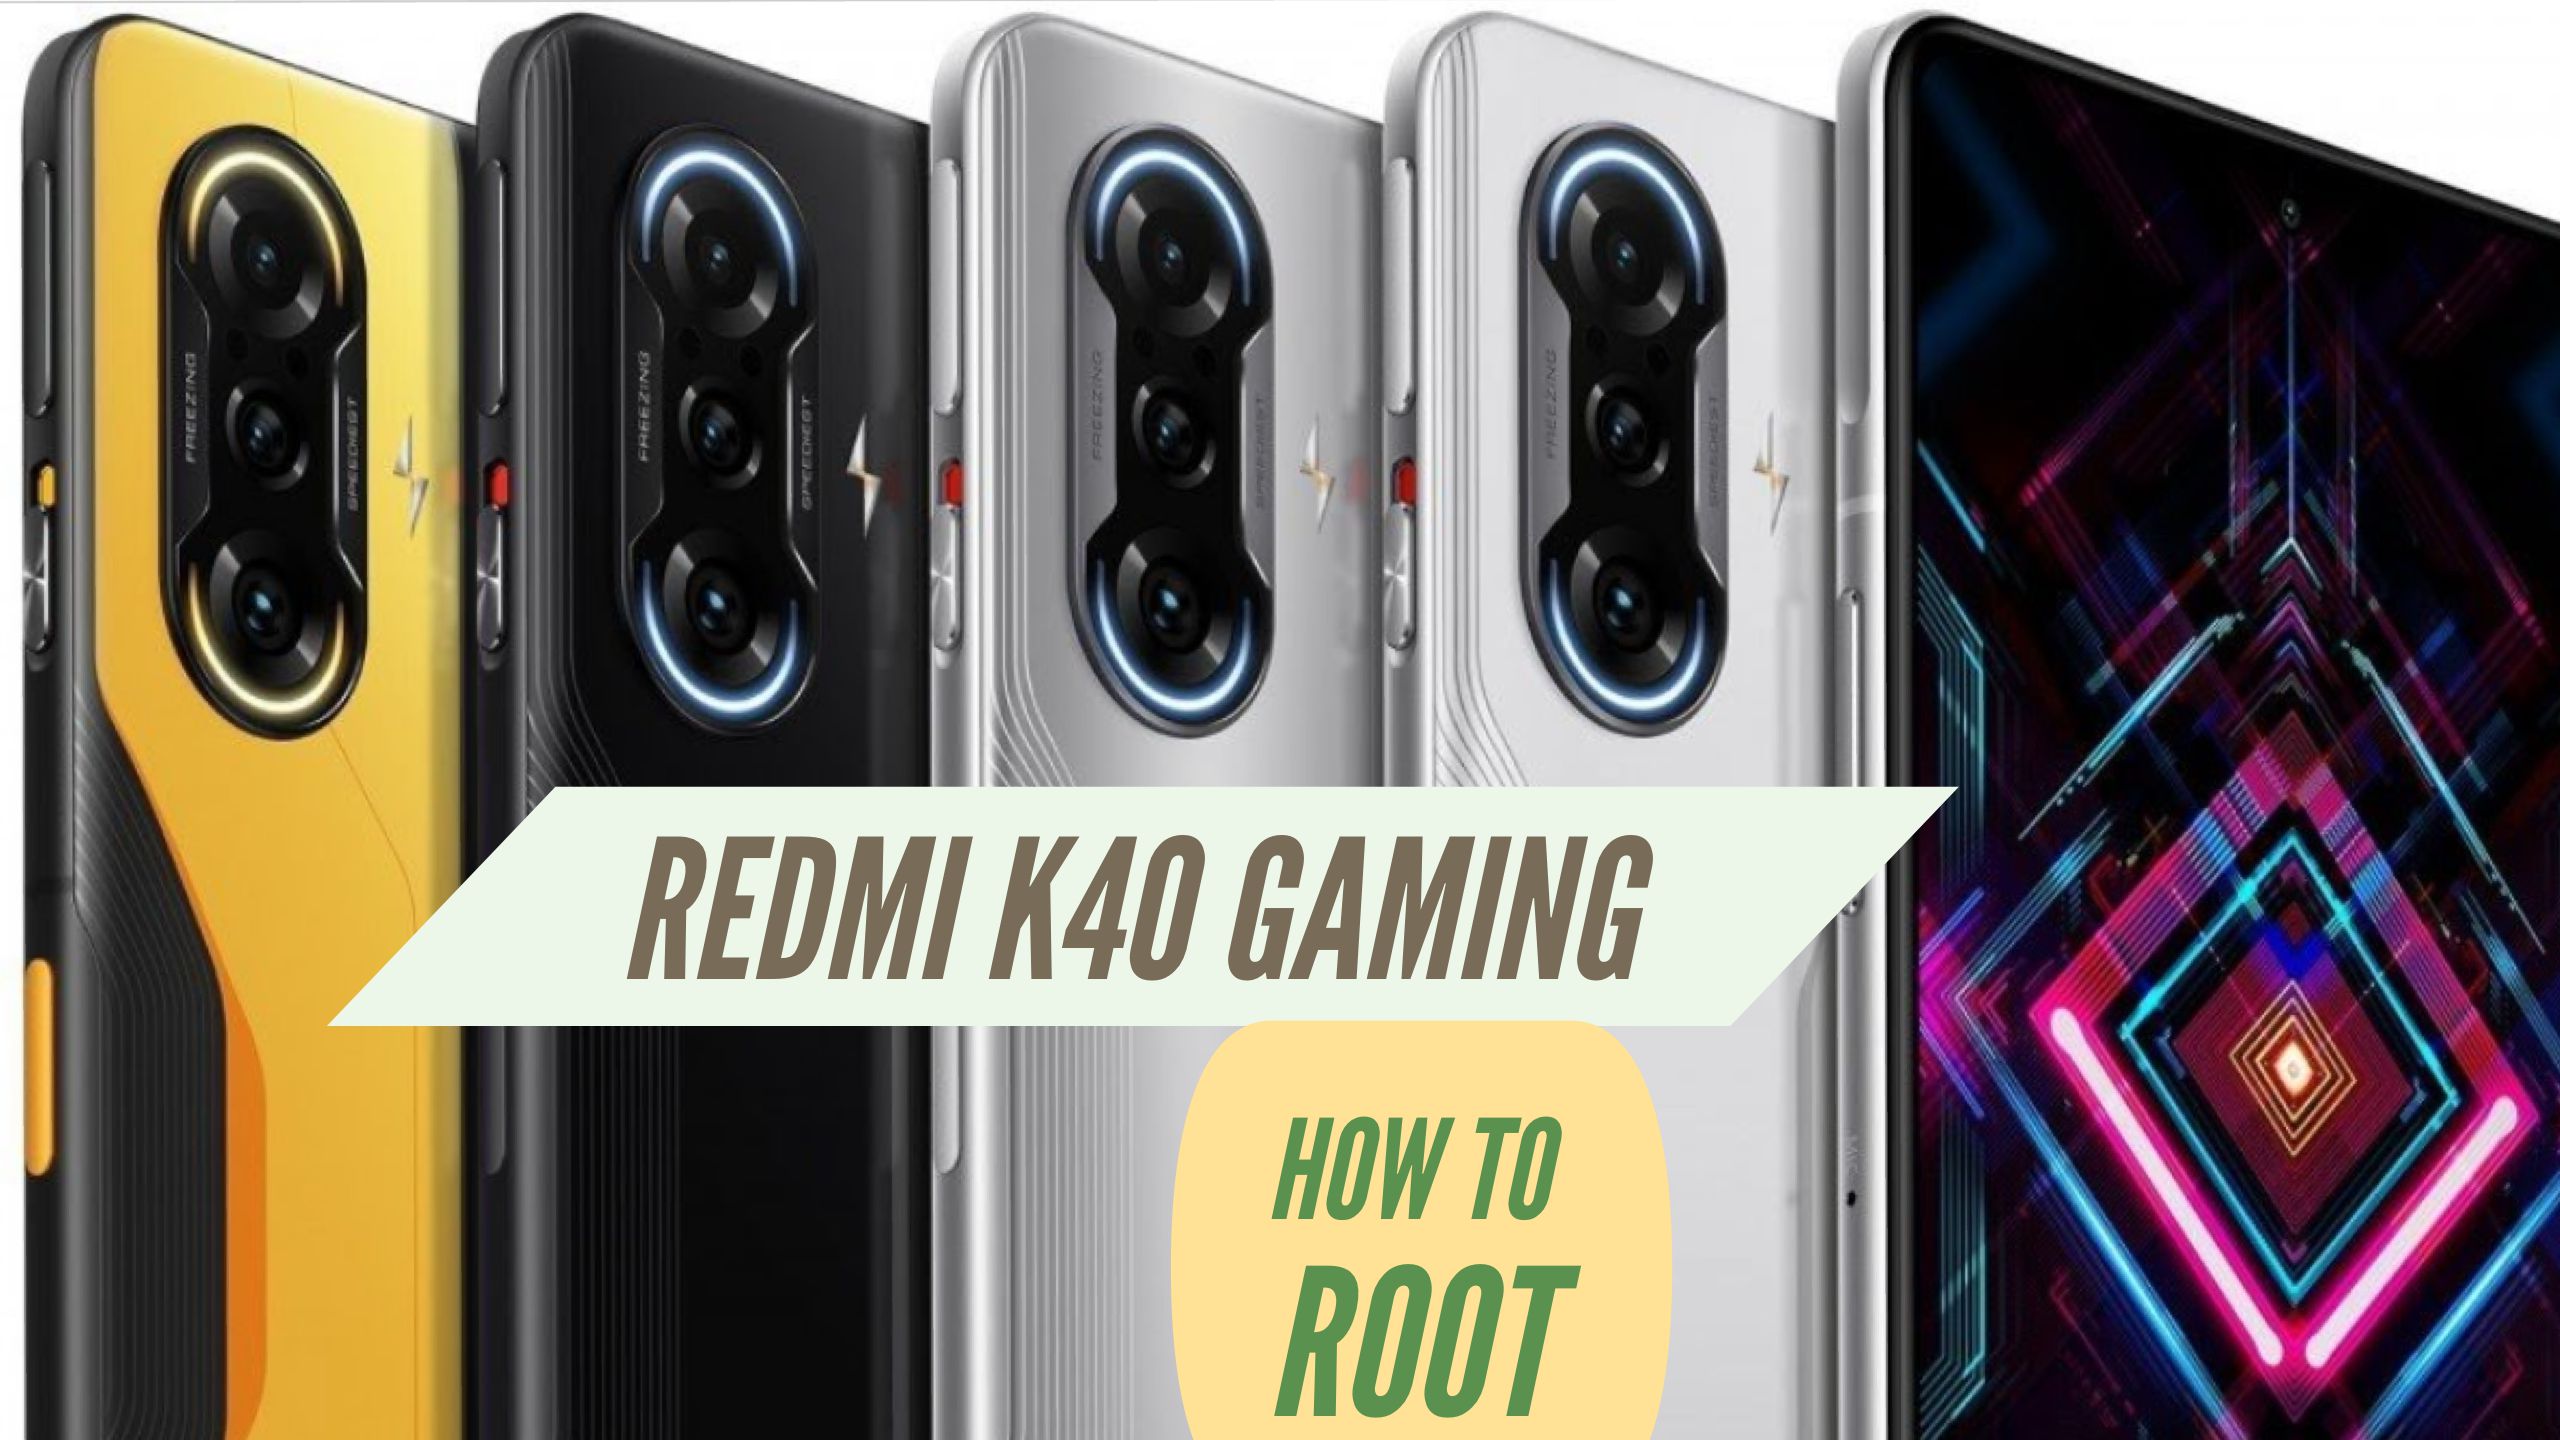 Root Redmi K40 Gaming